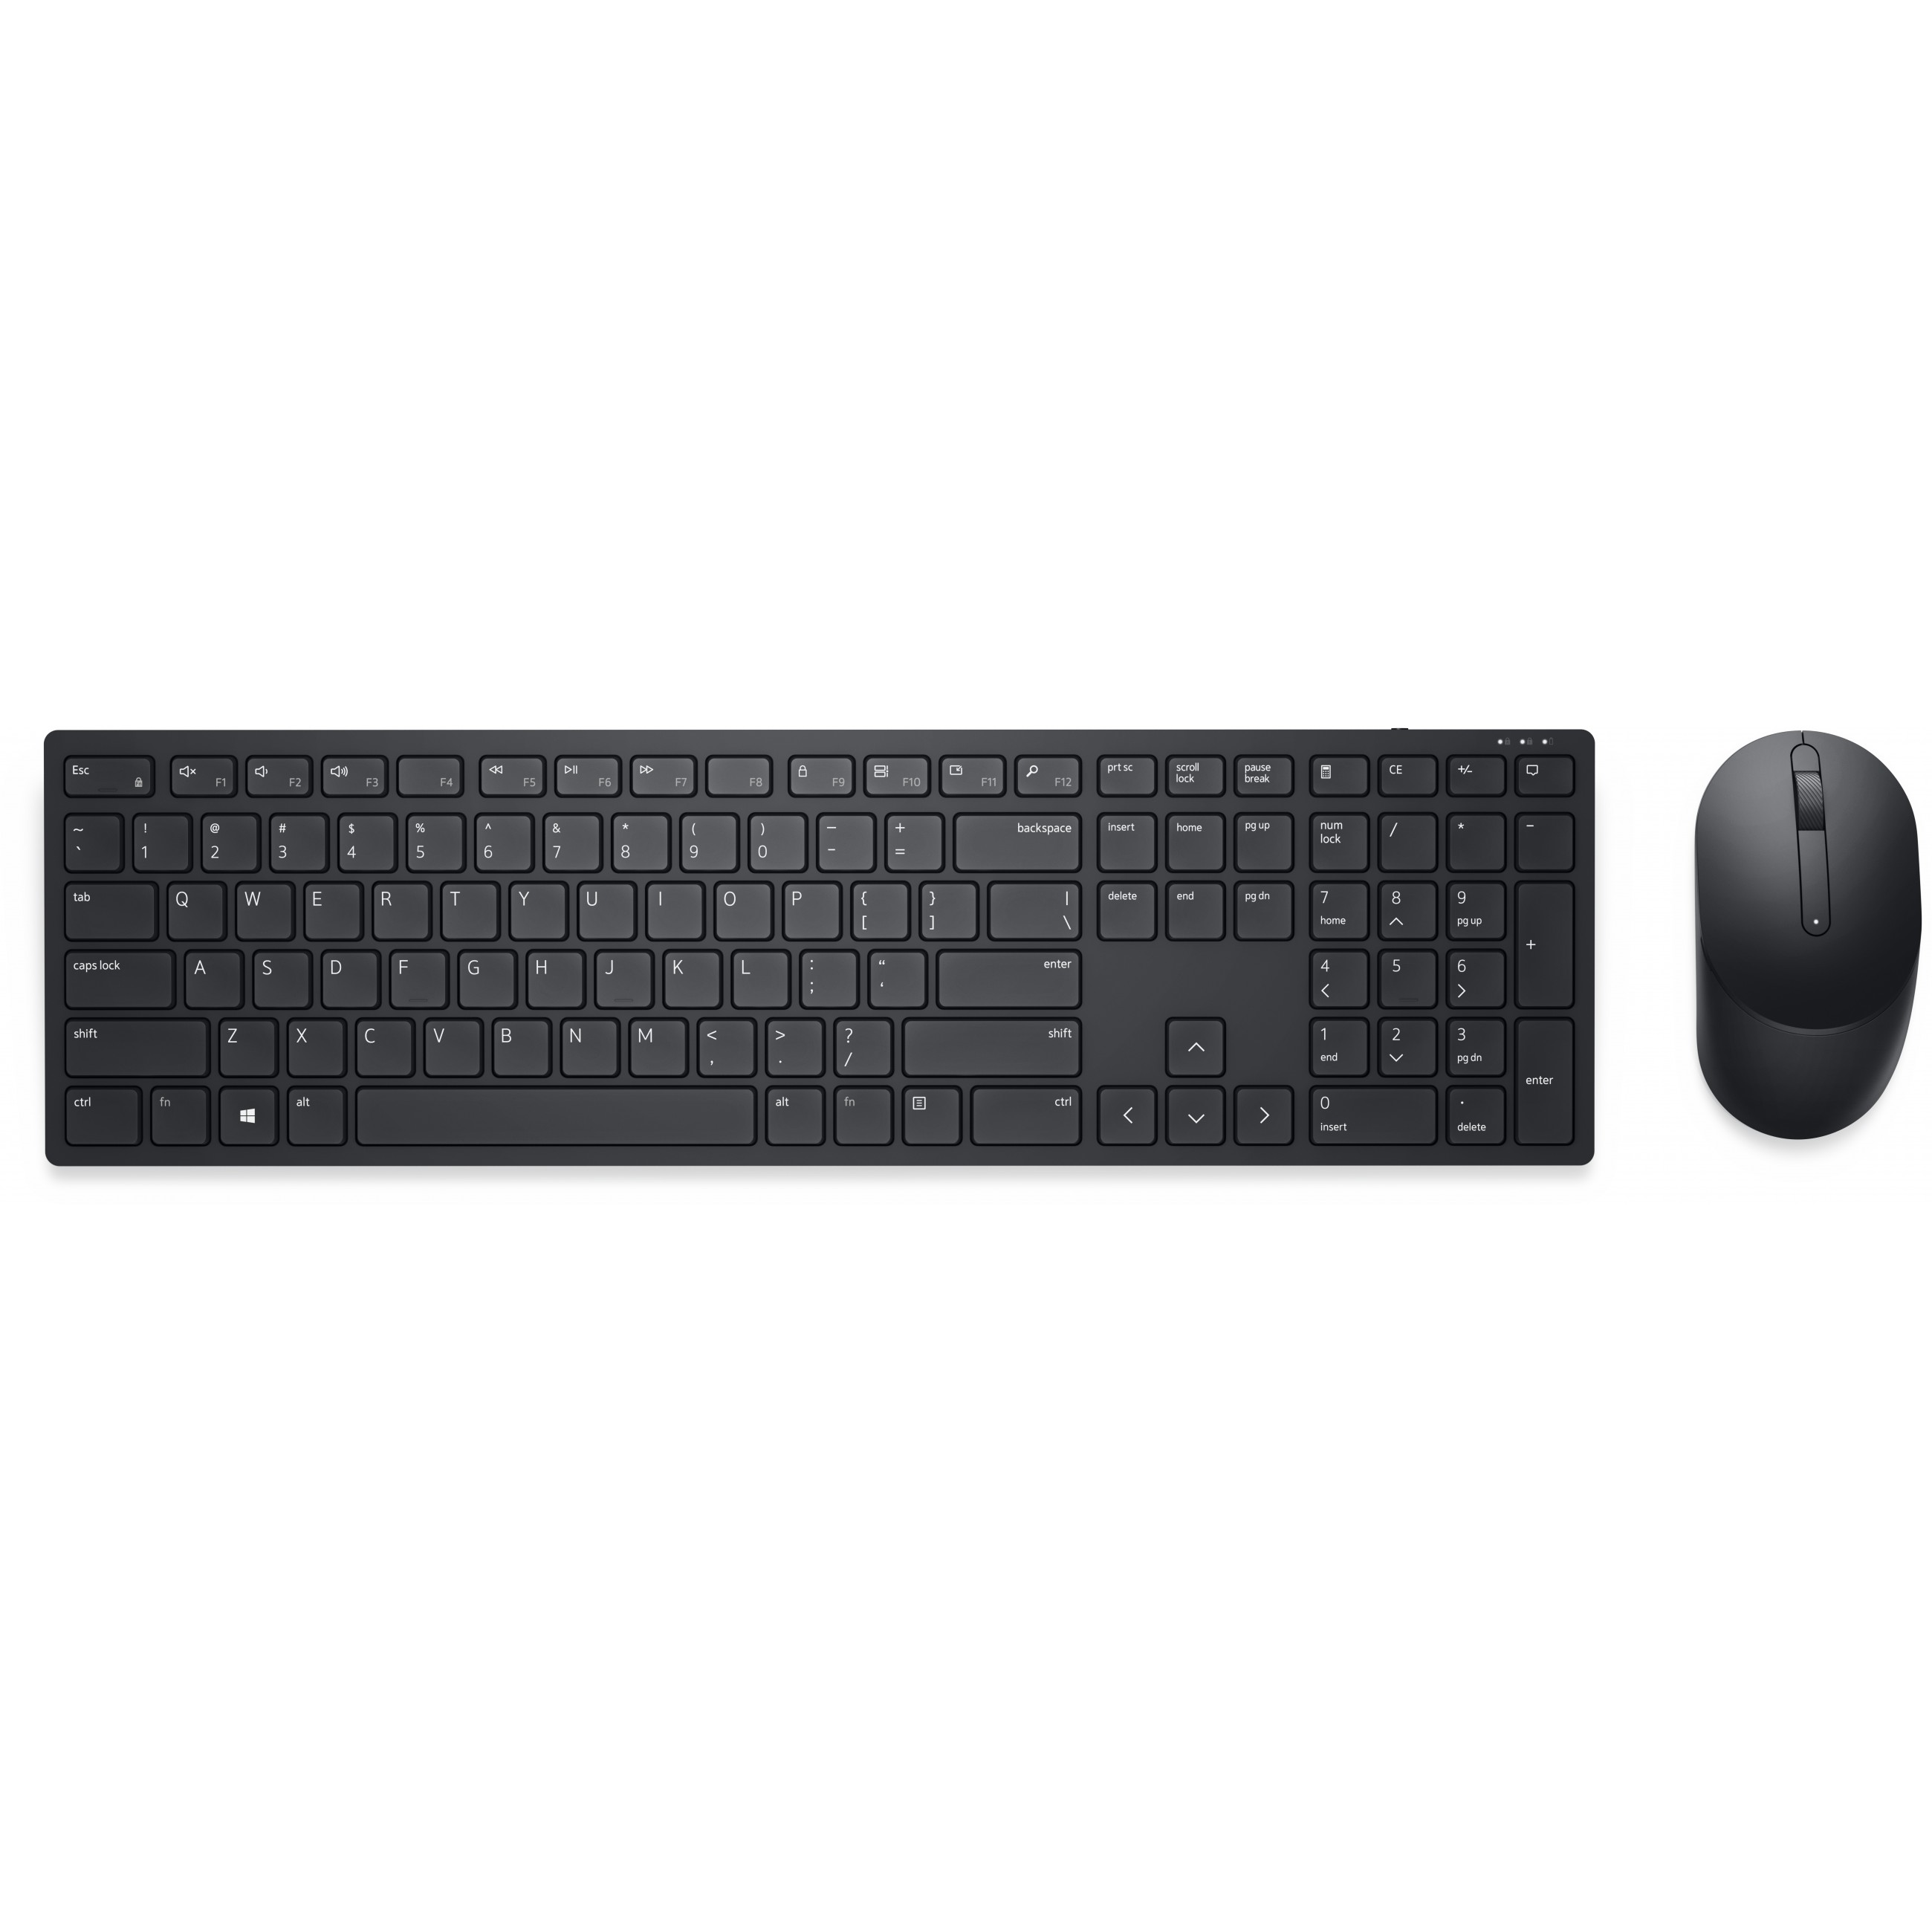 DELL Pro Wireless Keyboard and Mouse - KM5221W, Volle Größe (100%), RF Wireless, QWERTZ, Schwarz, Maus enthalten